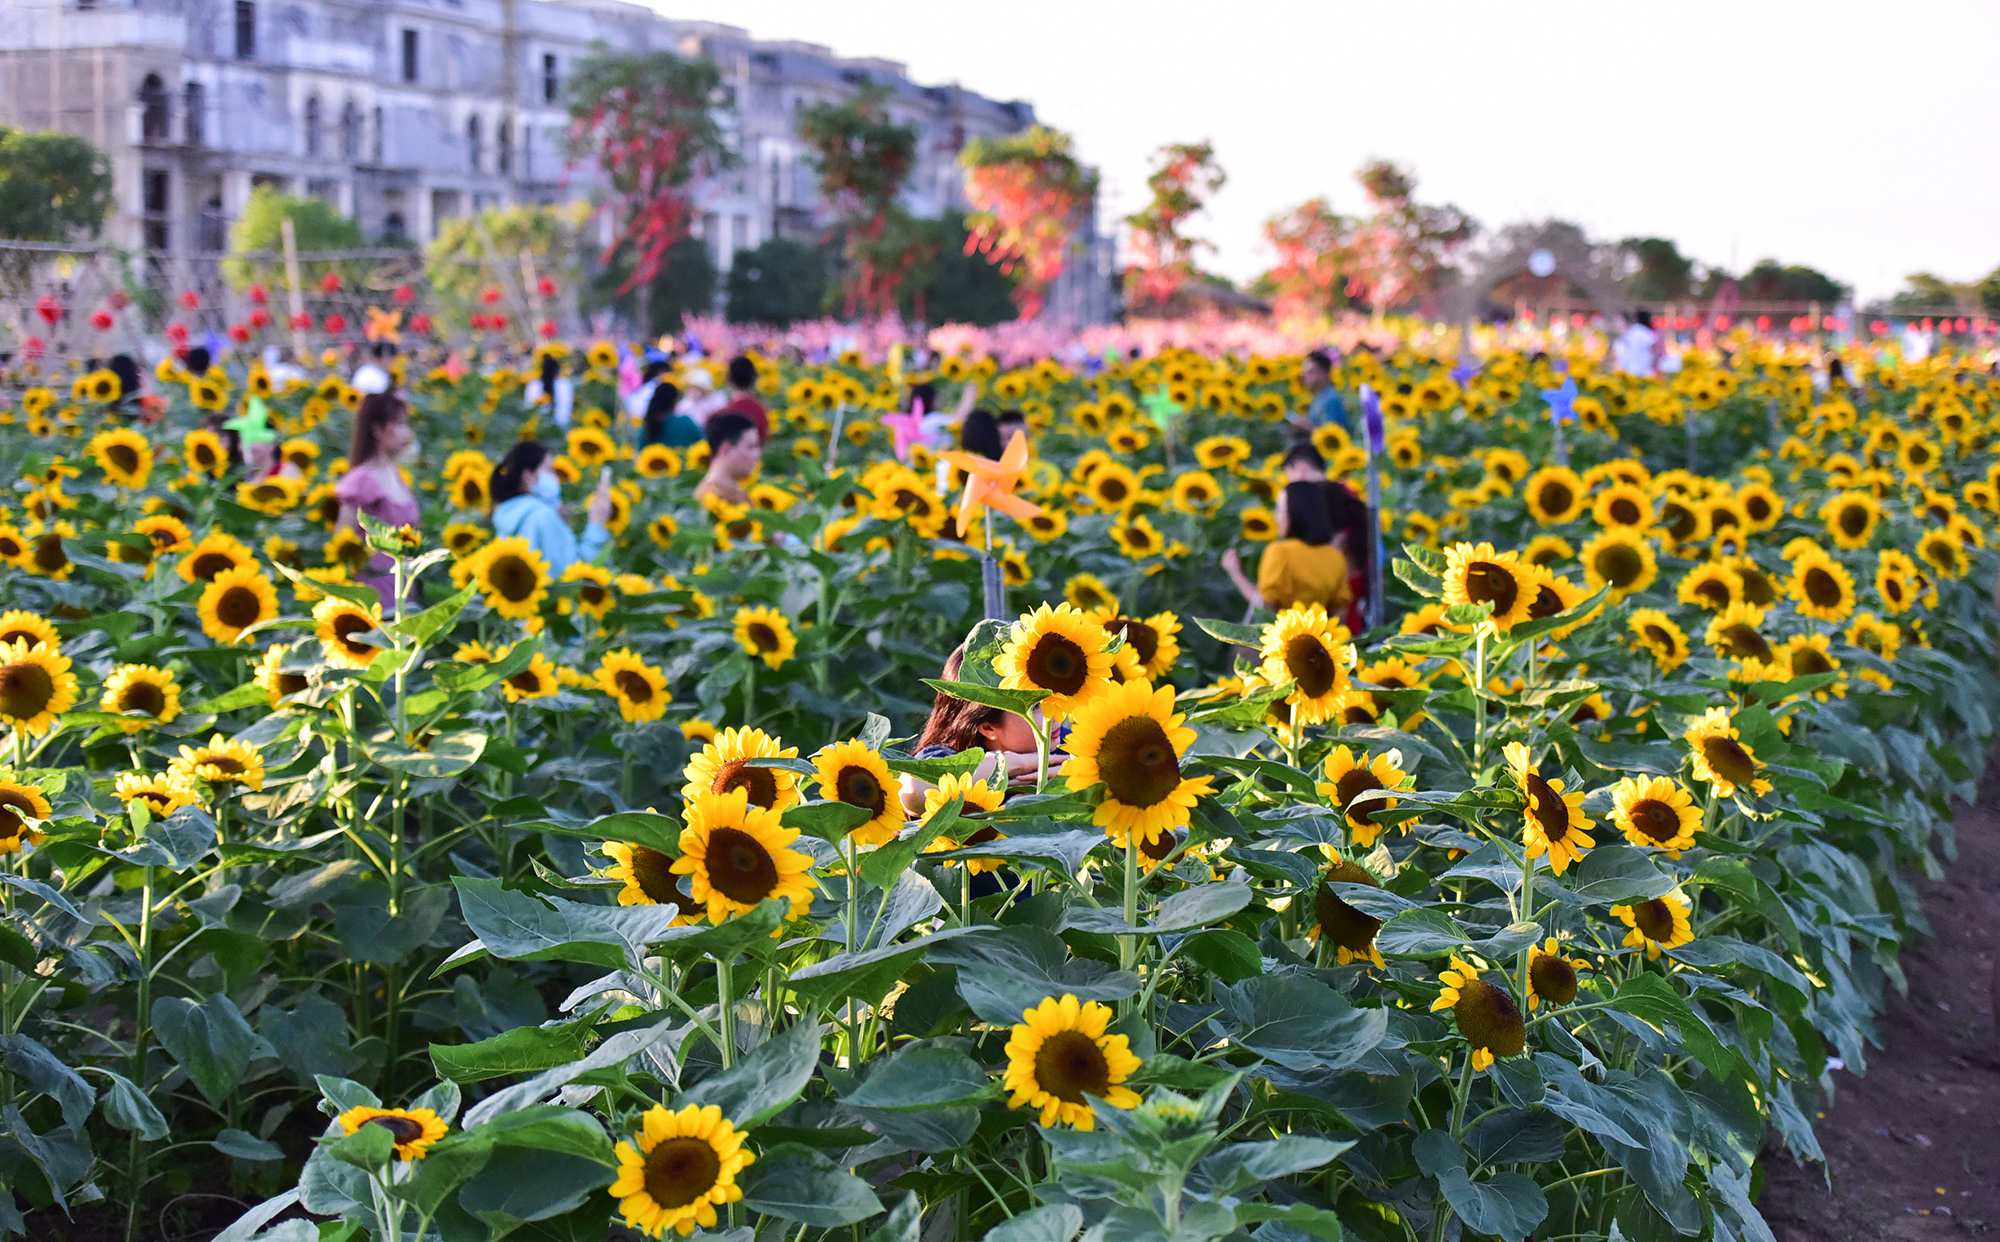 Khoảng một tuần nay, vườn hoa hướng dương thuộc phường Hiệp Bình Phước, TP Thủ Đức, TP.HCM đang gây sốt khi thu hút rất đông người dân và du khách tới check in, chụp hình.